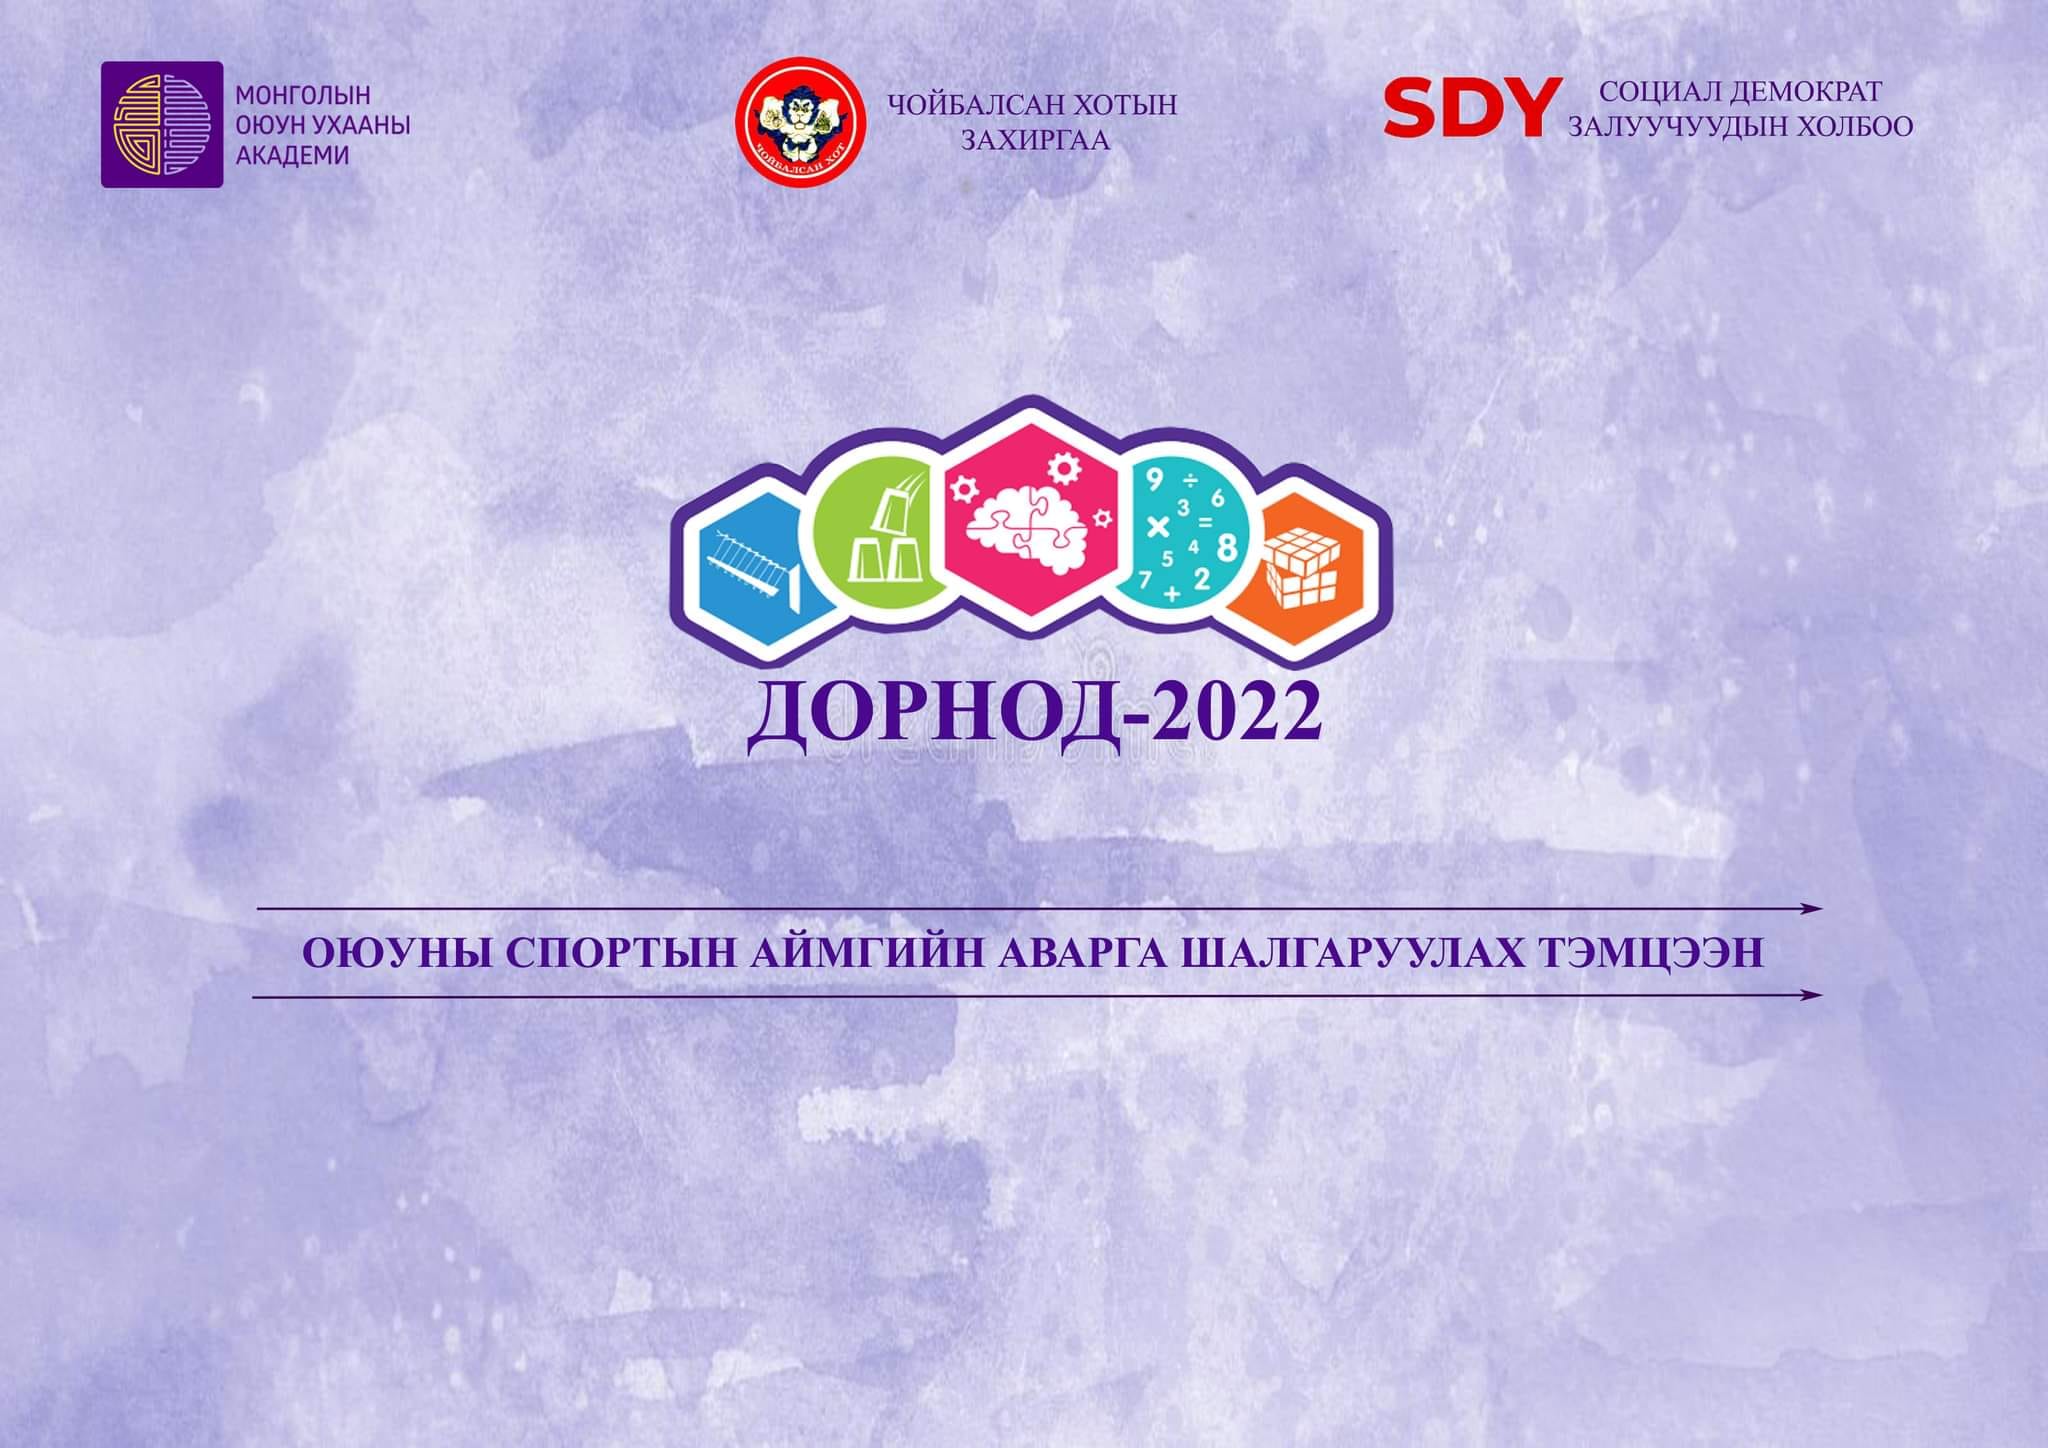 "Дорнод-2022" оюуны спортын тэмцээн болно DNN.mn